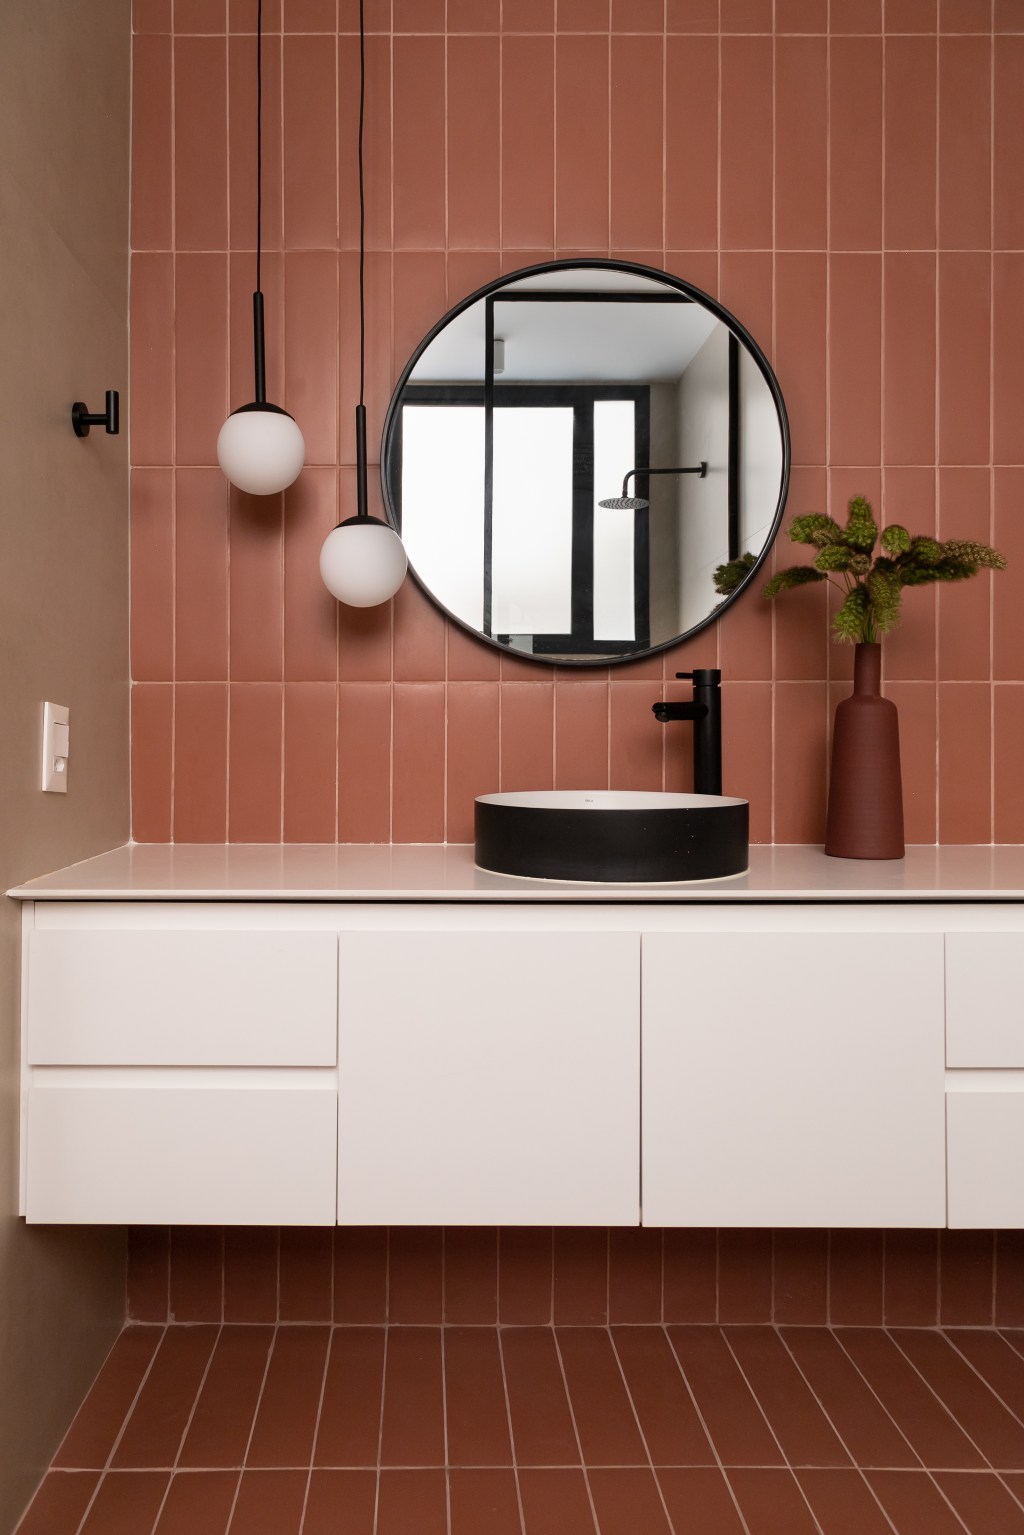 Banheiro com parede de azulejos rosa terroso, armário branco e espelho redondo.